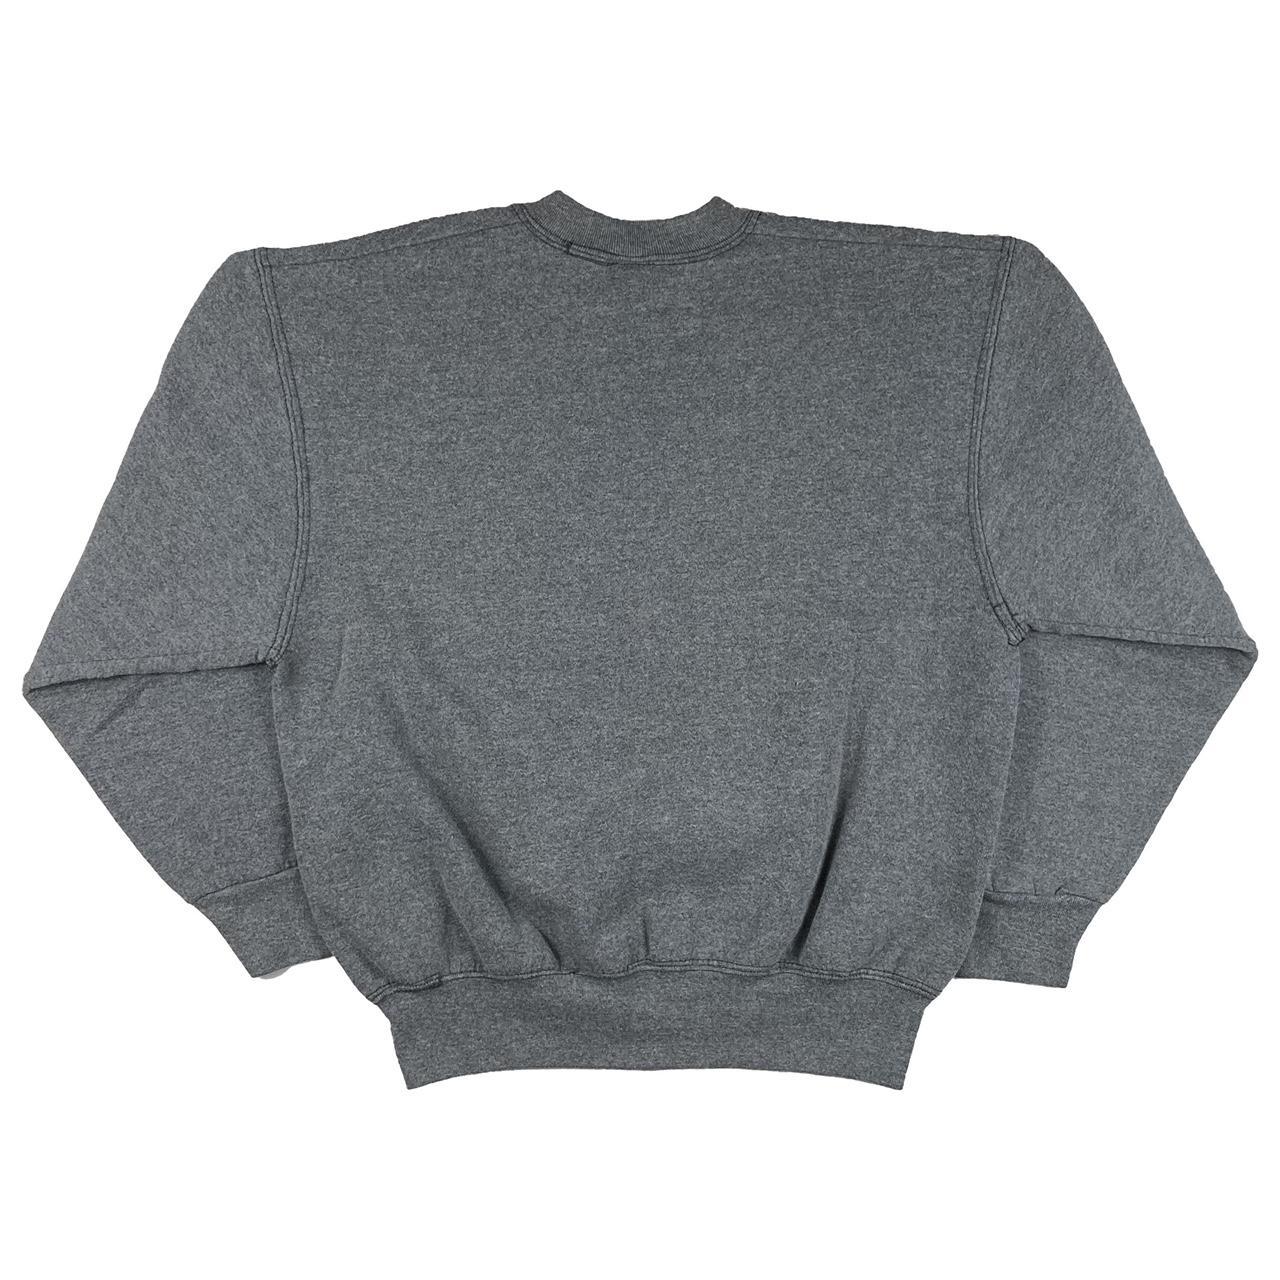 Vintage 1980s Blank Sweatshirt Grey BVD Made in... - Depop